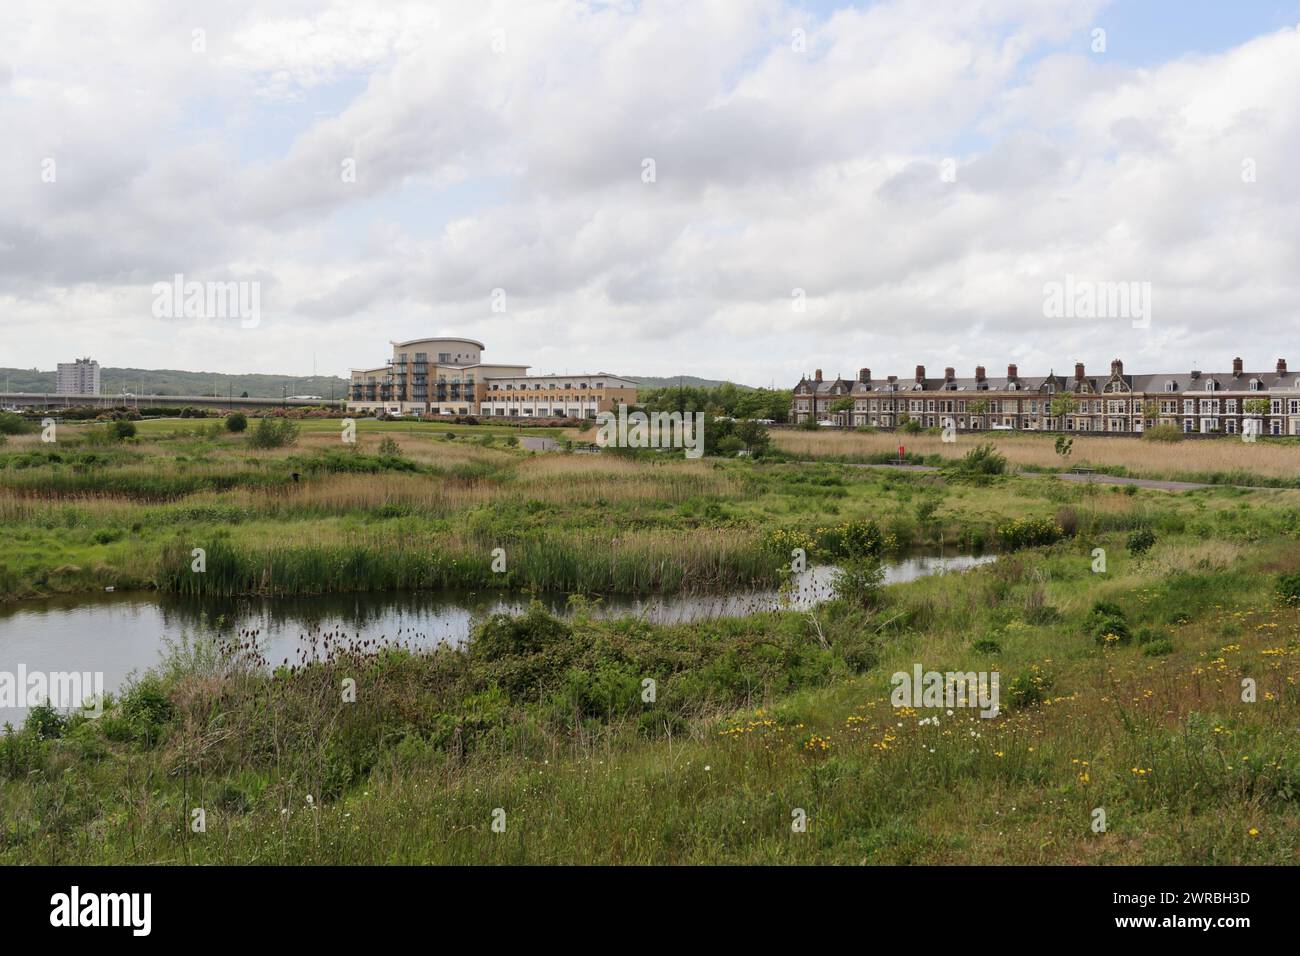 Réserve naturelle des terres humides de Cardiff Bay Wales UK, hotspot de biodiversité urbaine reedbed sur un habitat faunique de terre récupéré Banque D'Images